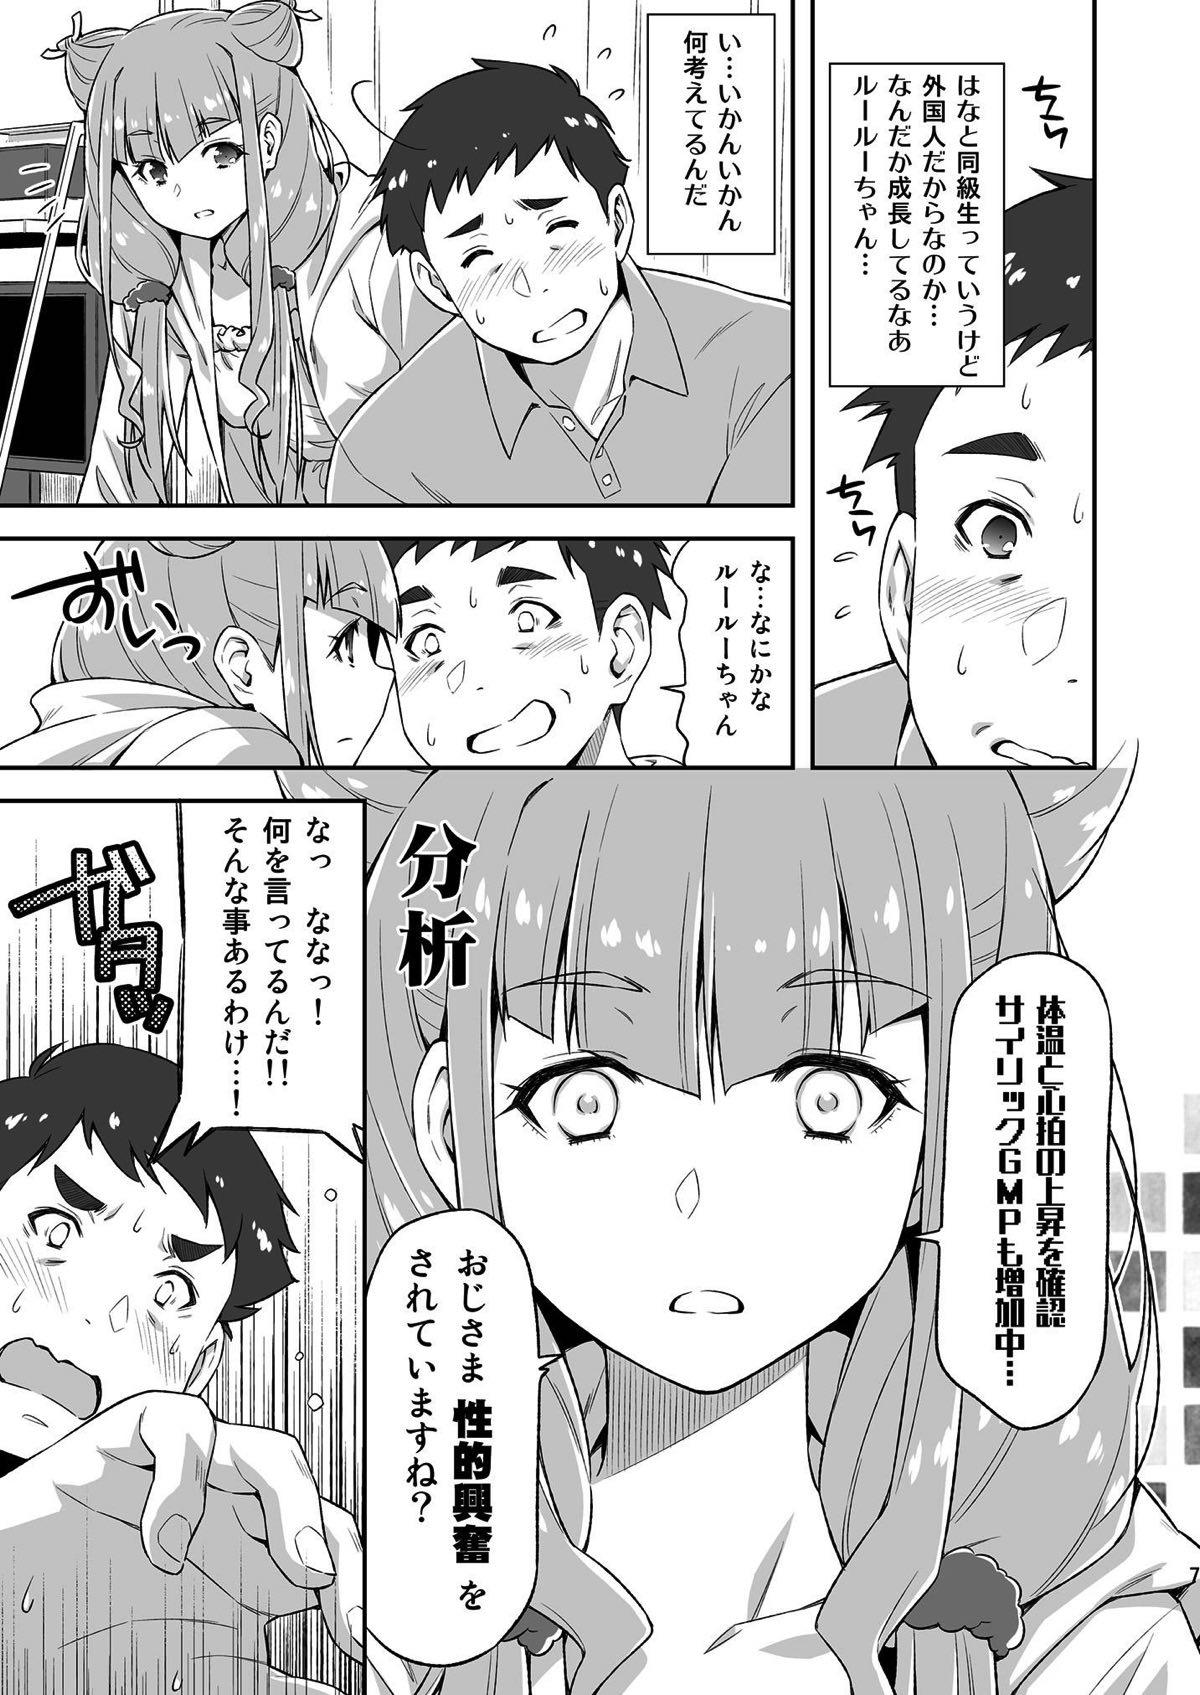 Morrita Ruru ga Yonaka ni Totsuzen Semattekita node. - Hugtto precure Couples - Page 6